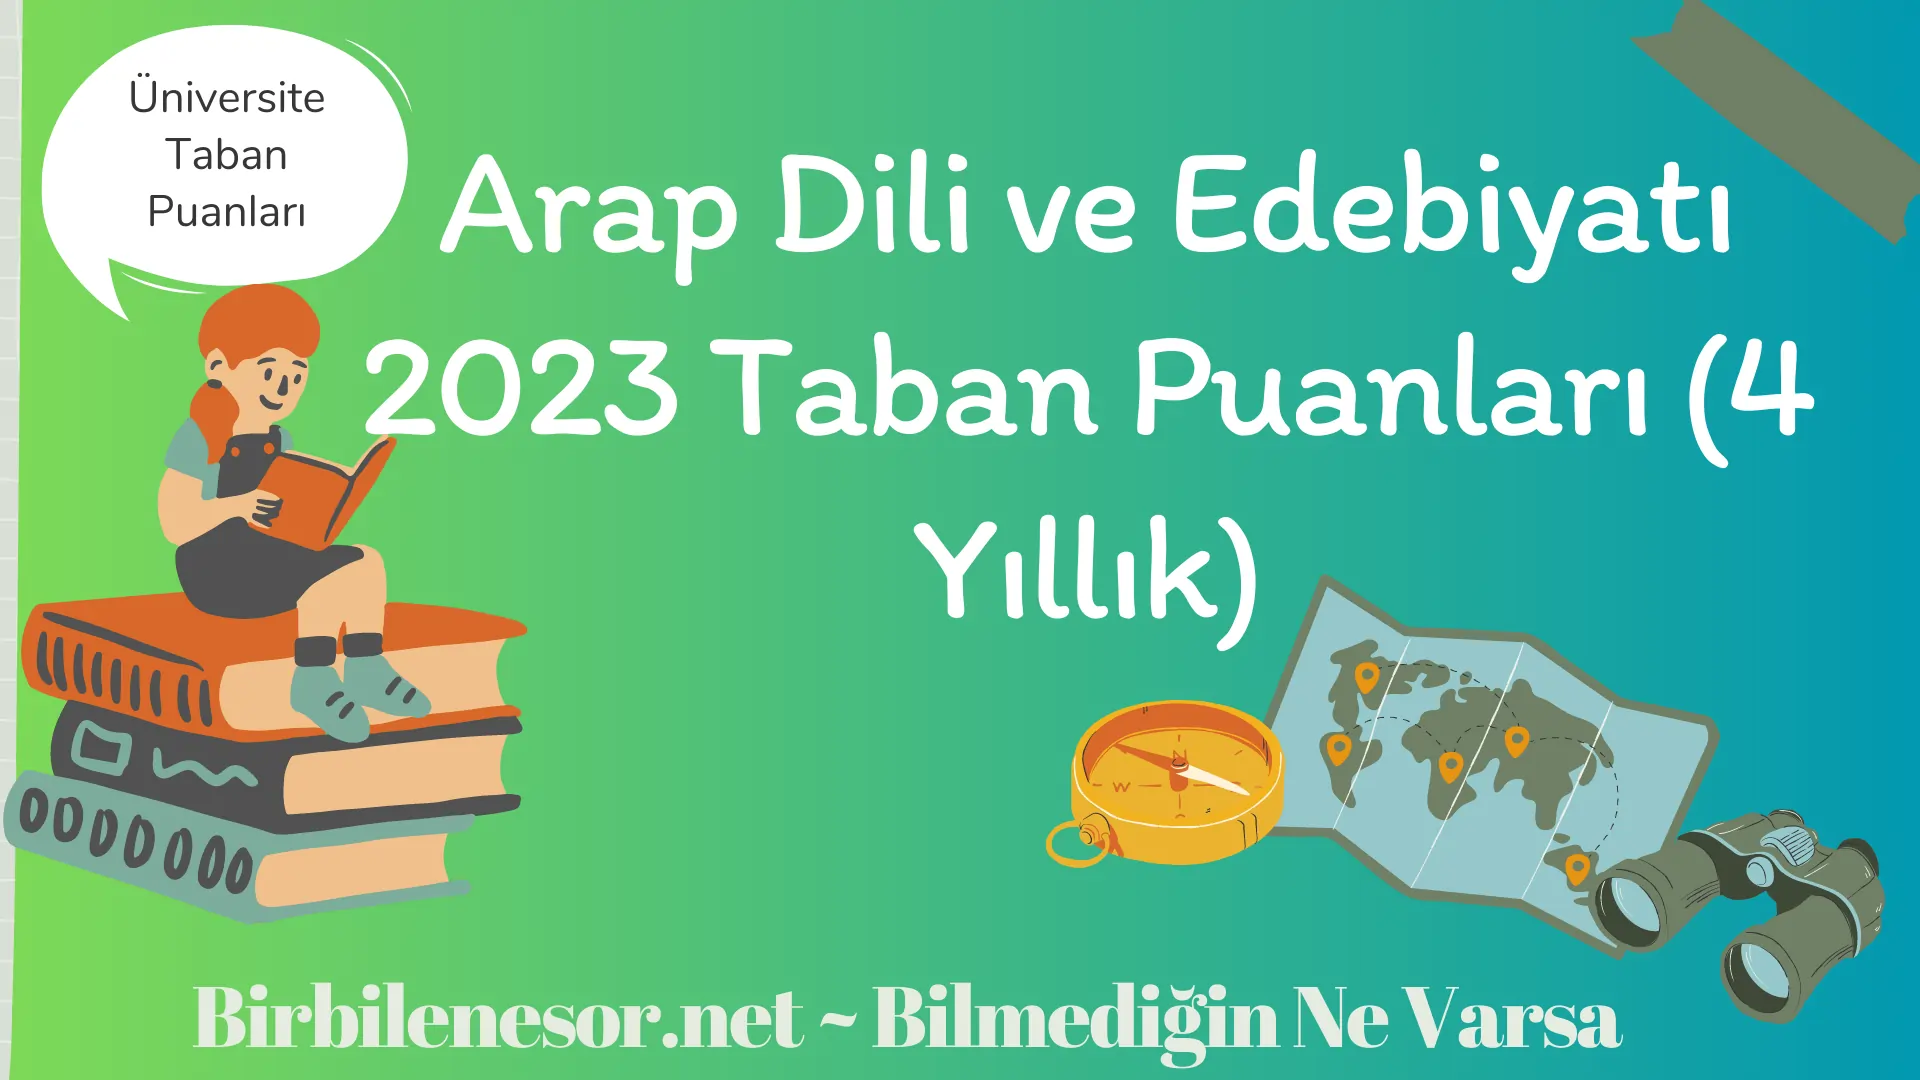 Arap Dili ve Edebiyatı 2023 Taban Puanları (4 Yıllık)